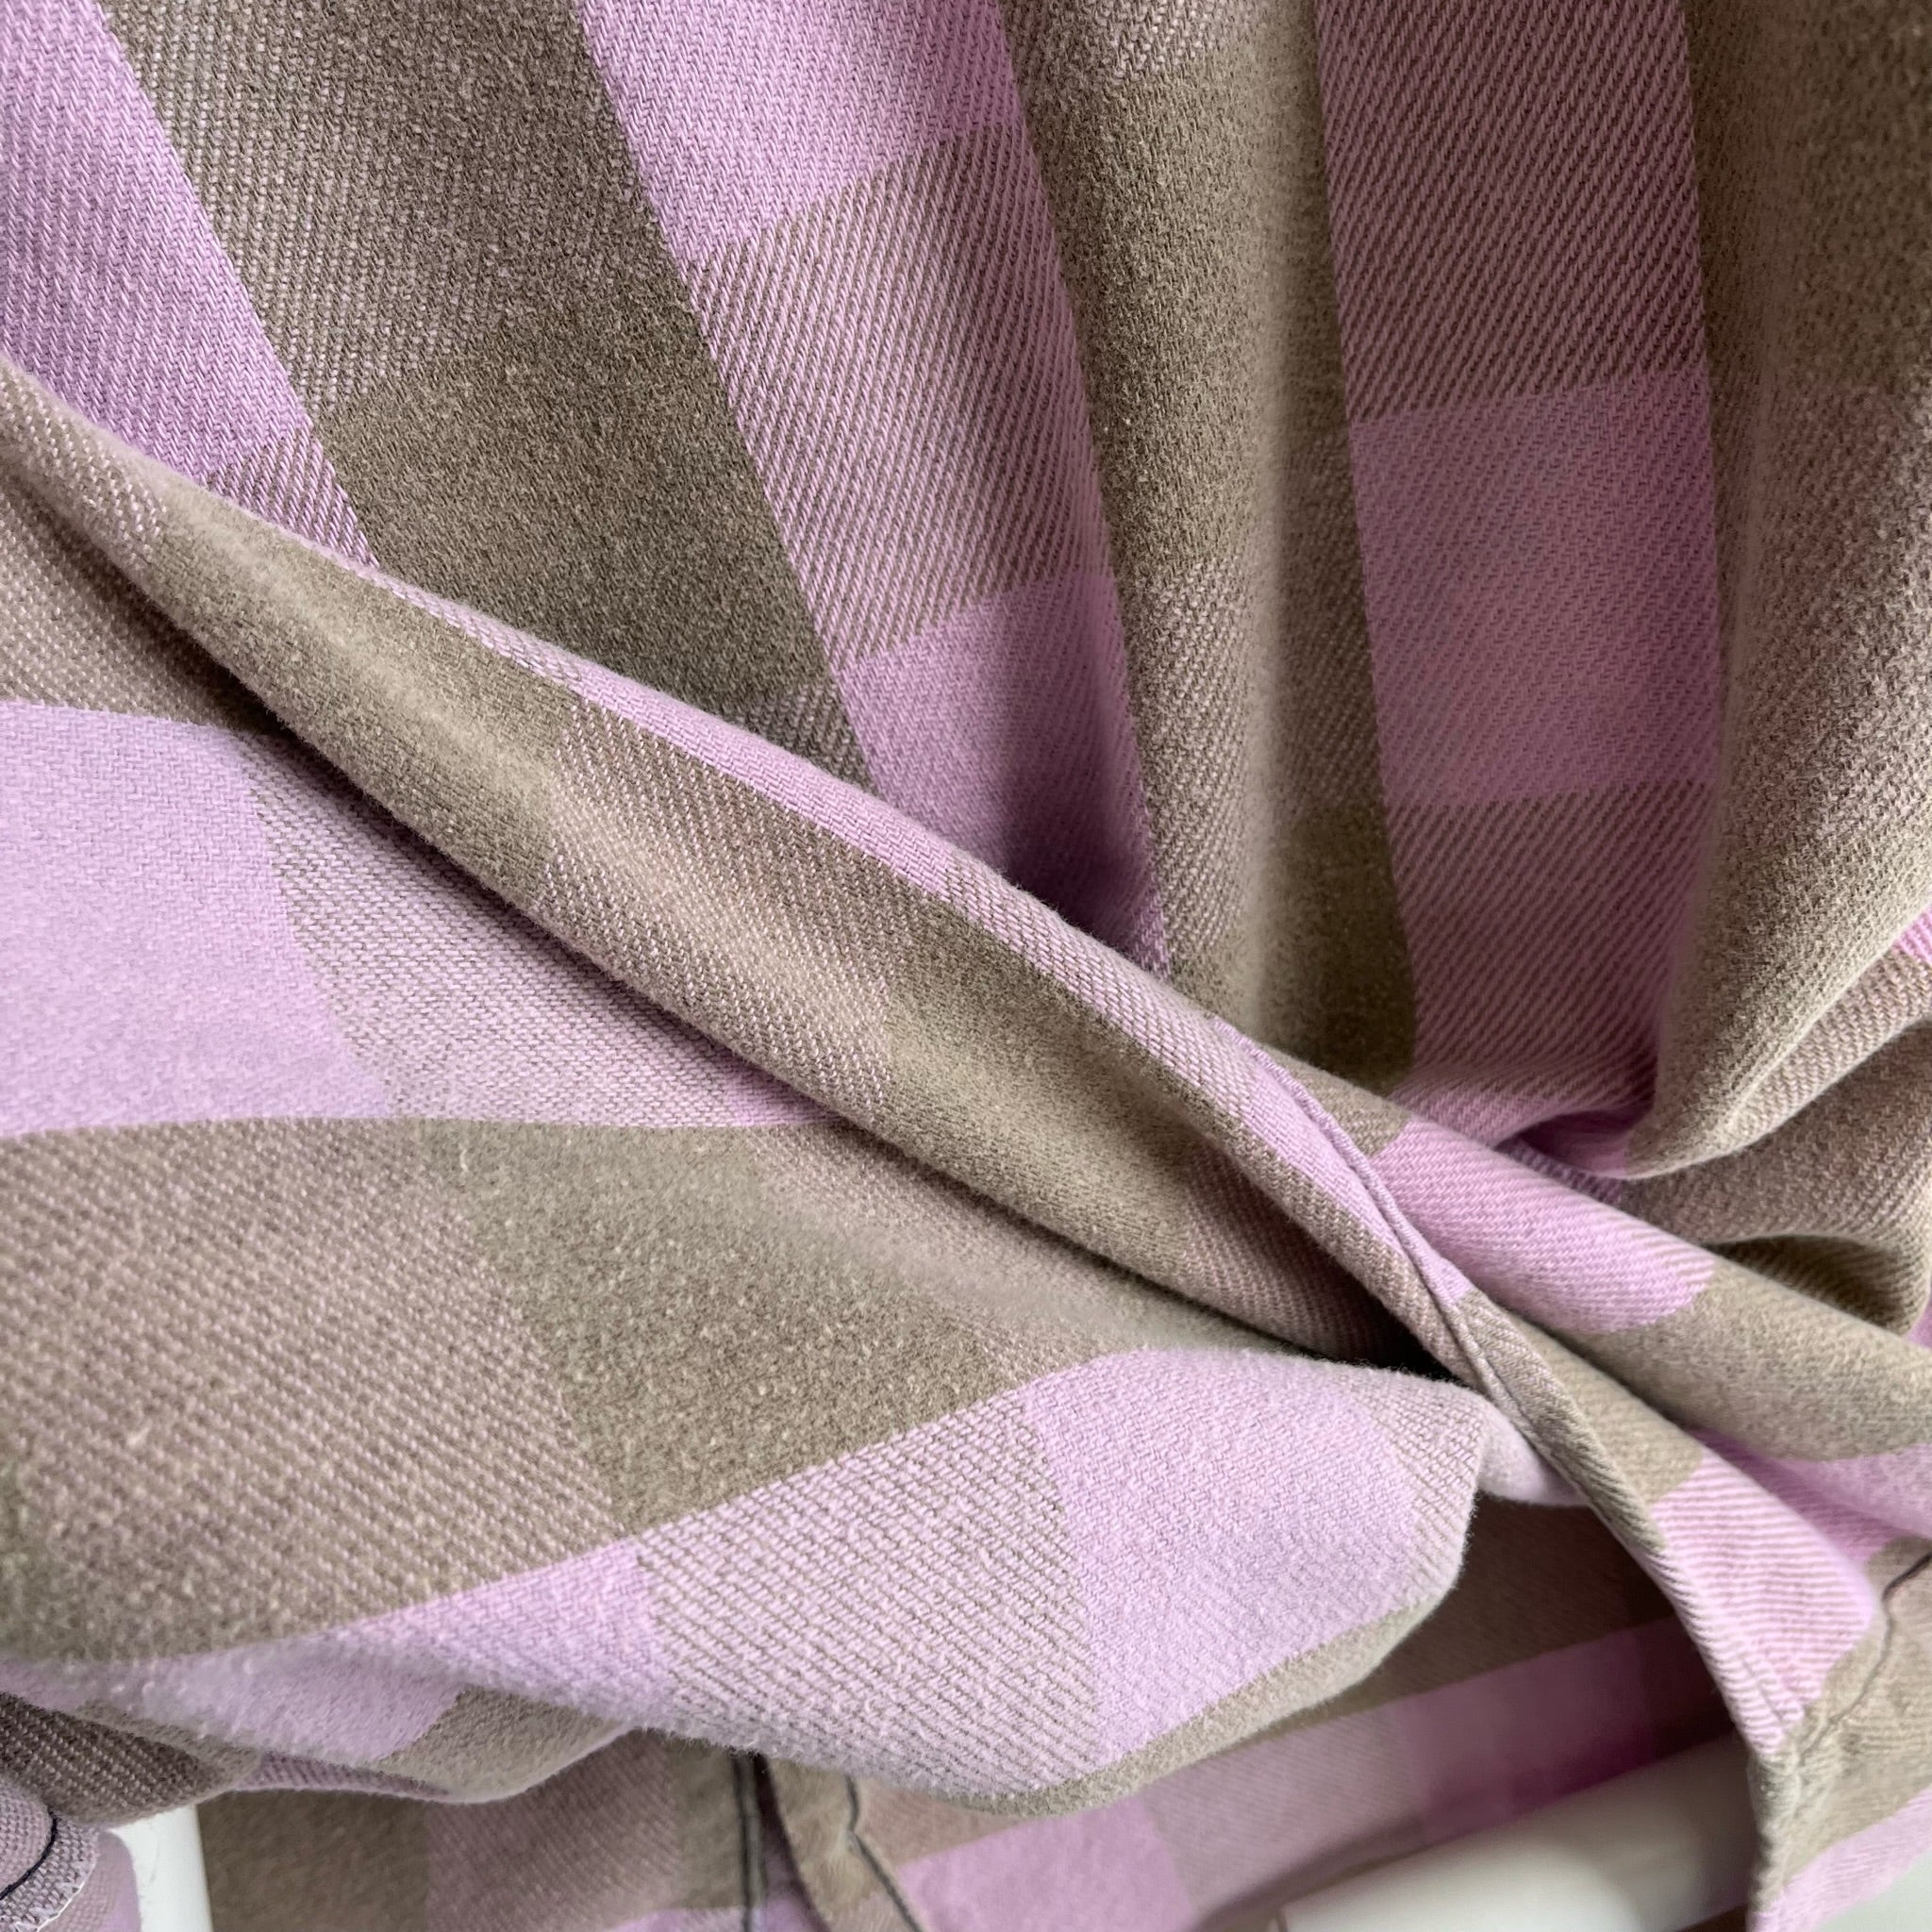 1980s Lavender and Mauve Cotton Flannel